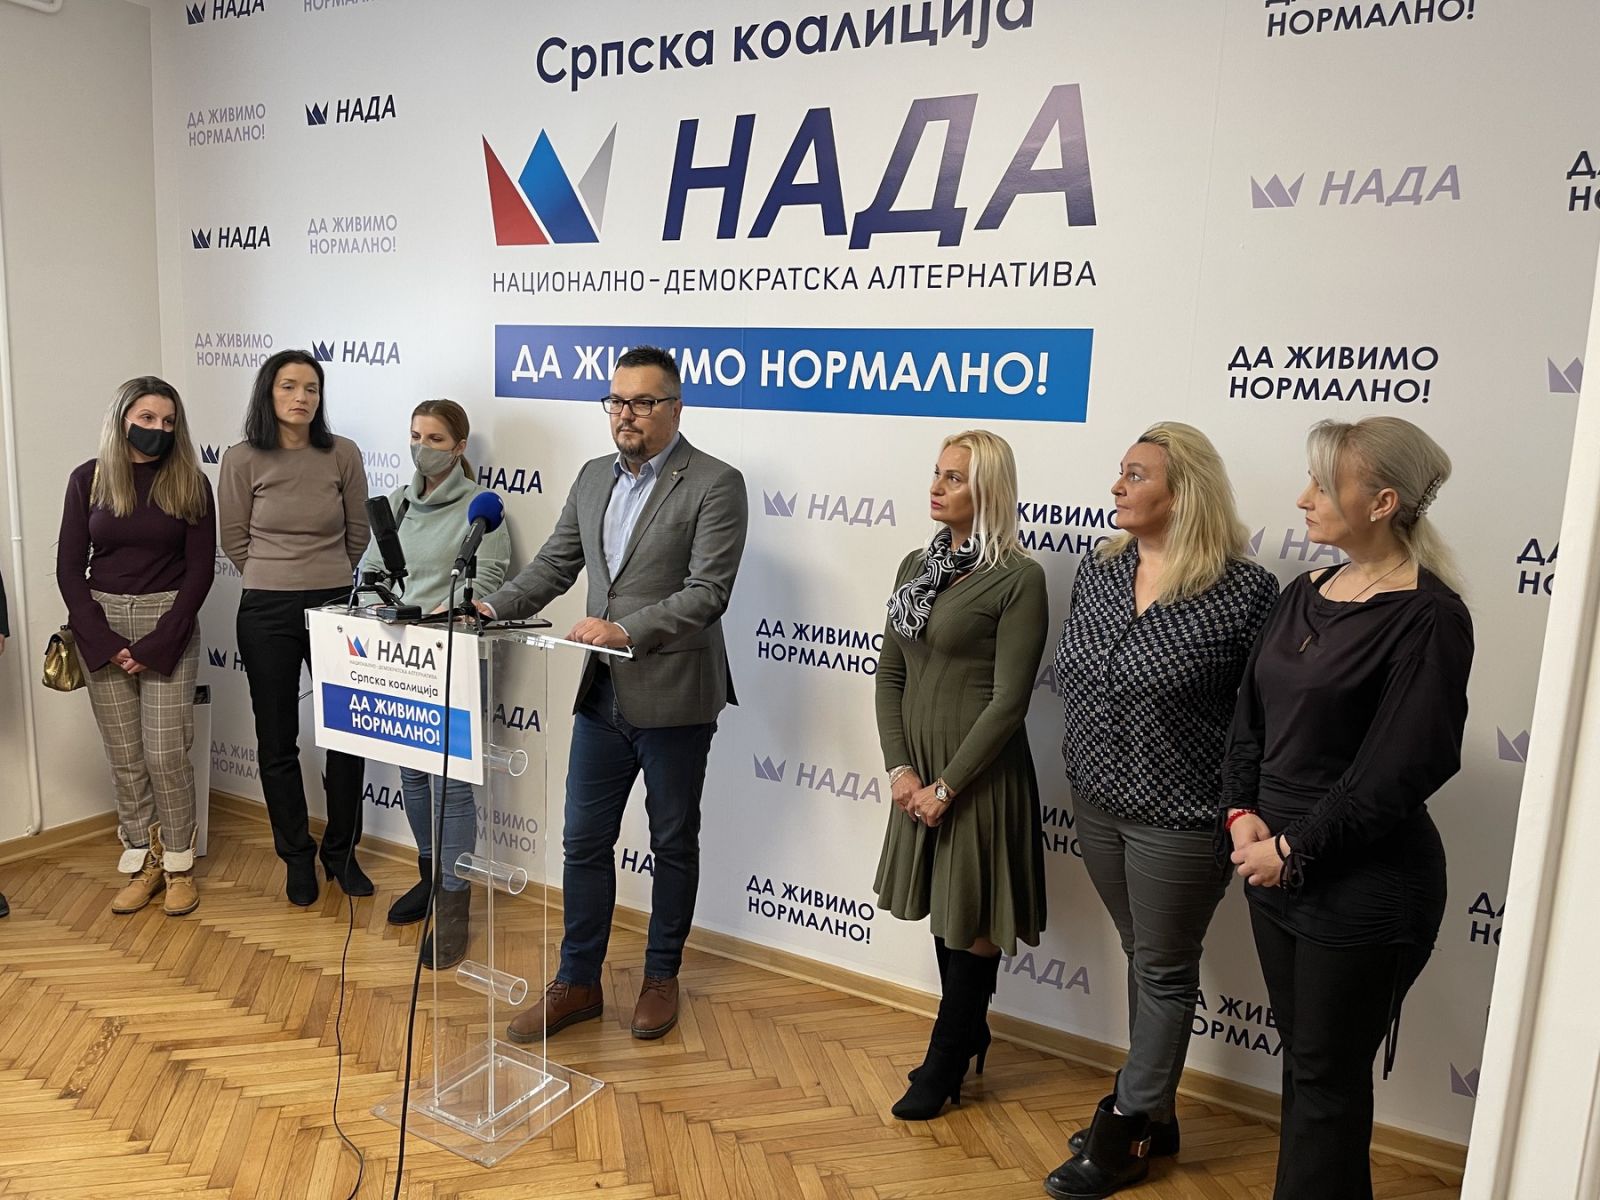 Српској коалицији НАДА приступила три нова удружења